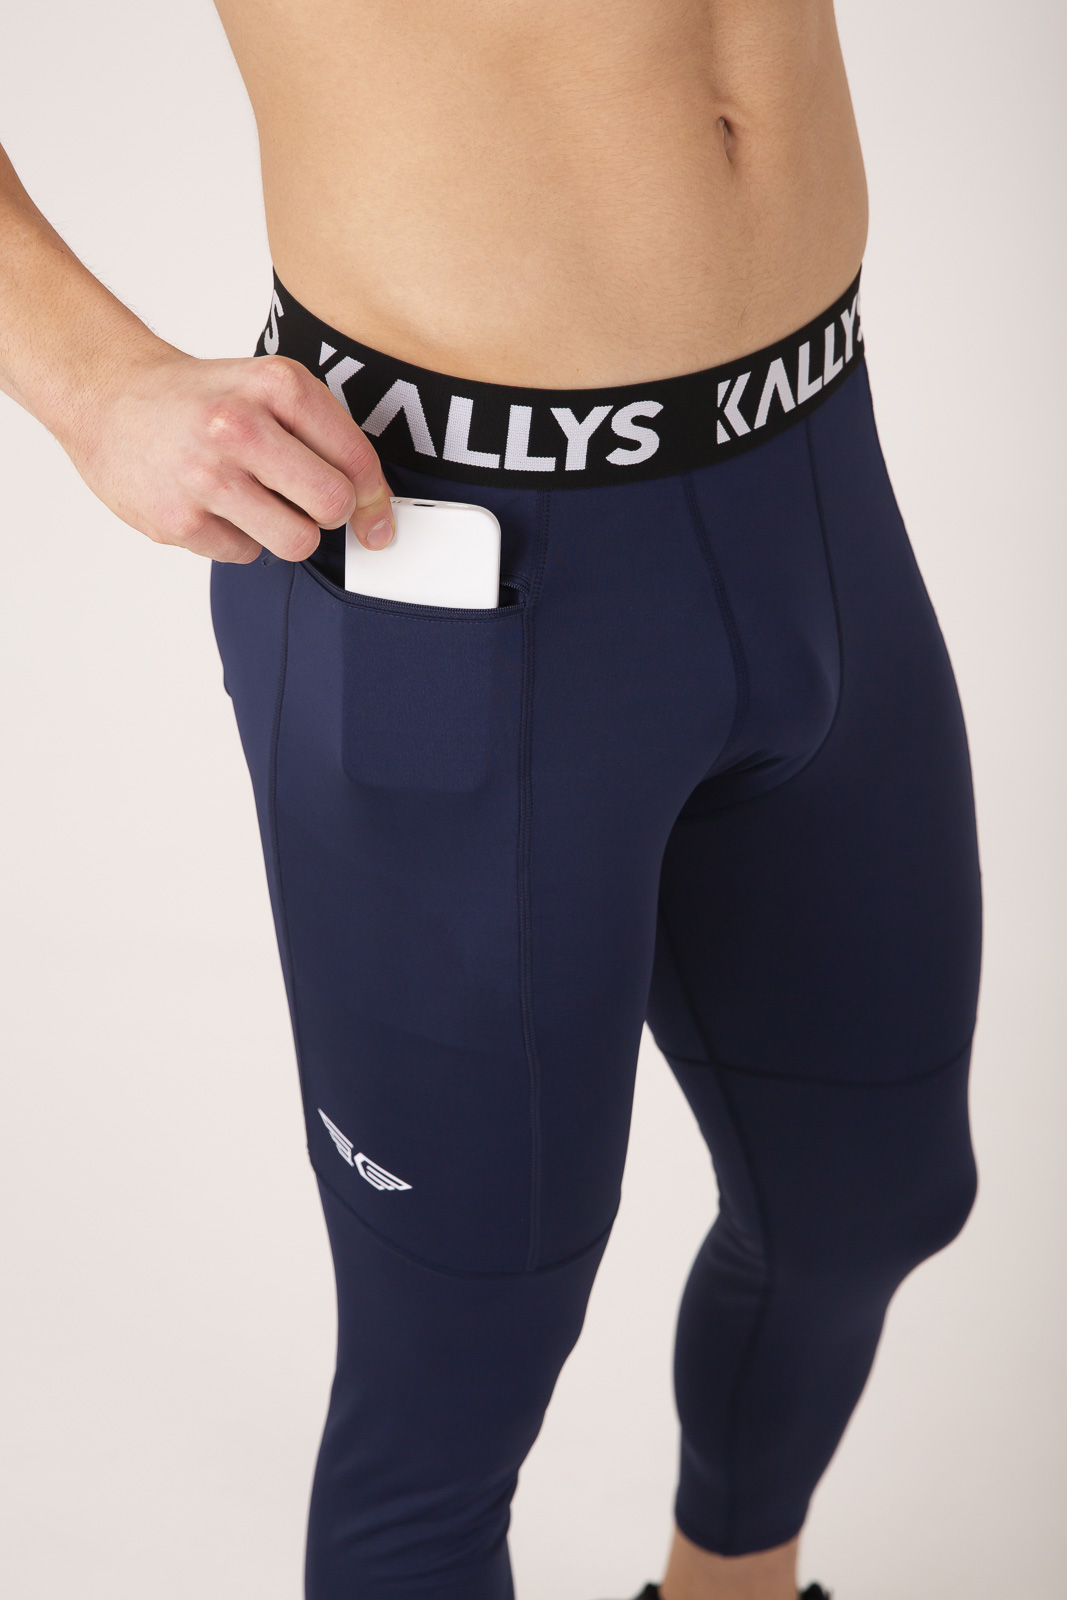 Kallys, Pánske športové legíny s vreckom na zips, modré EFFORT